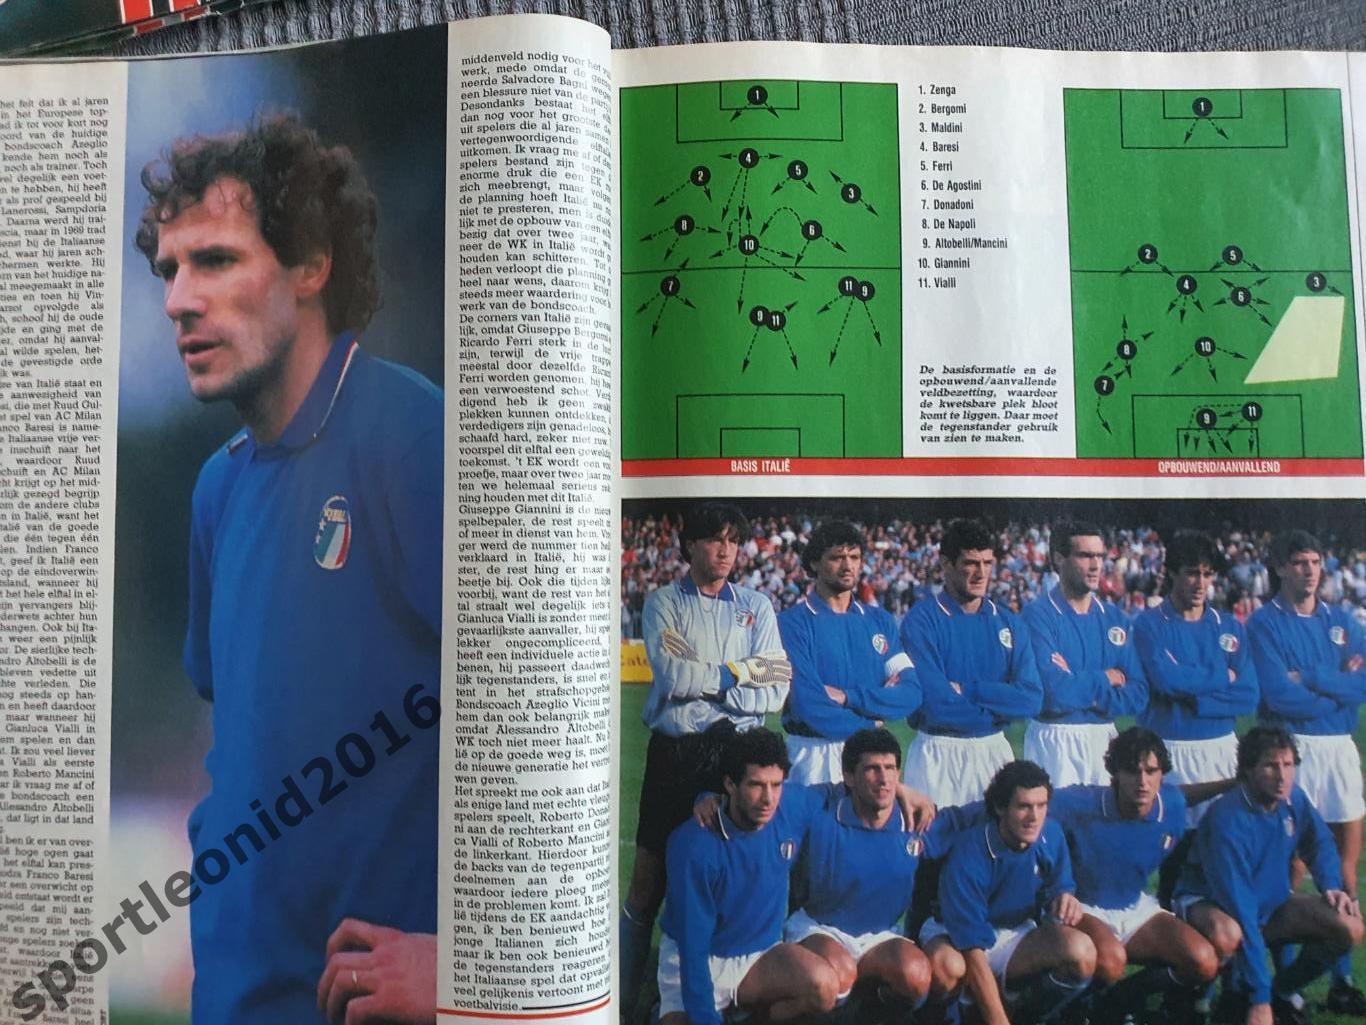 Voetbal International 1988.Годовая подписка.52 номера +4 спецвыпуска к Евро-88.4 4